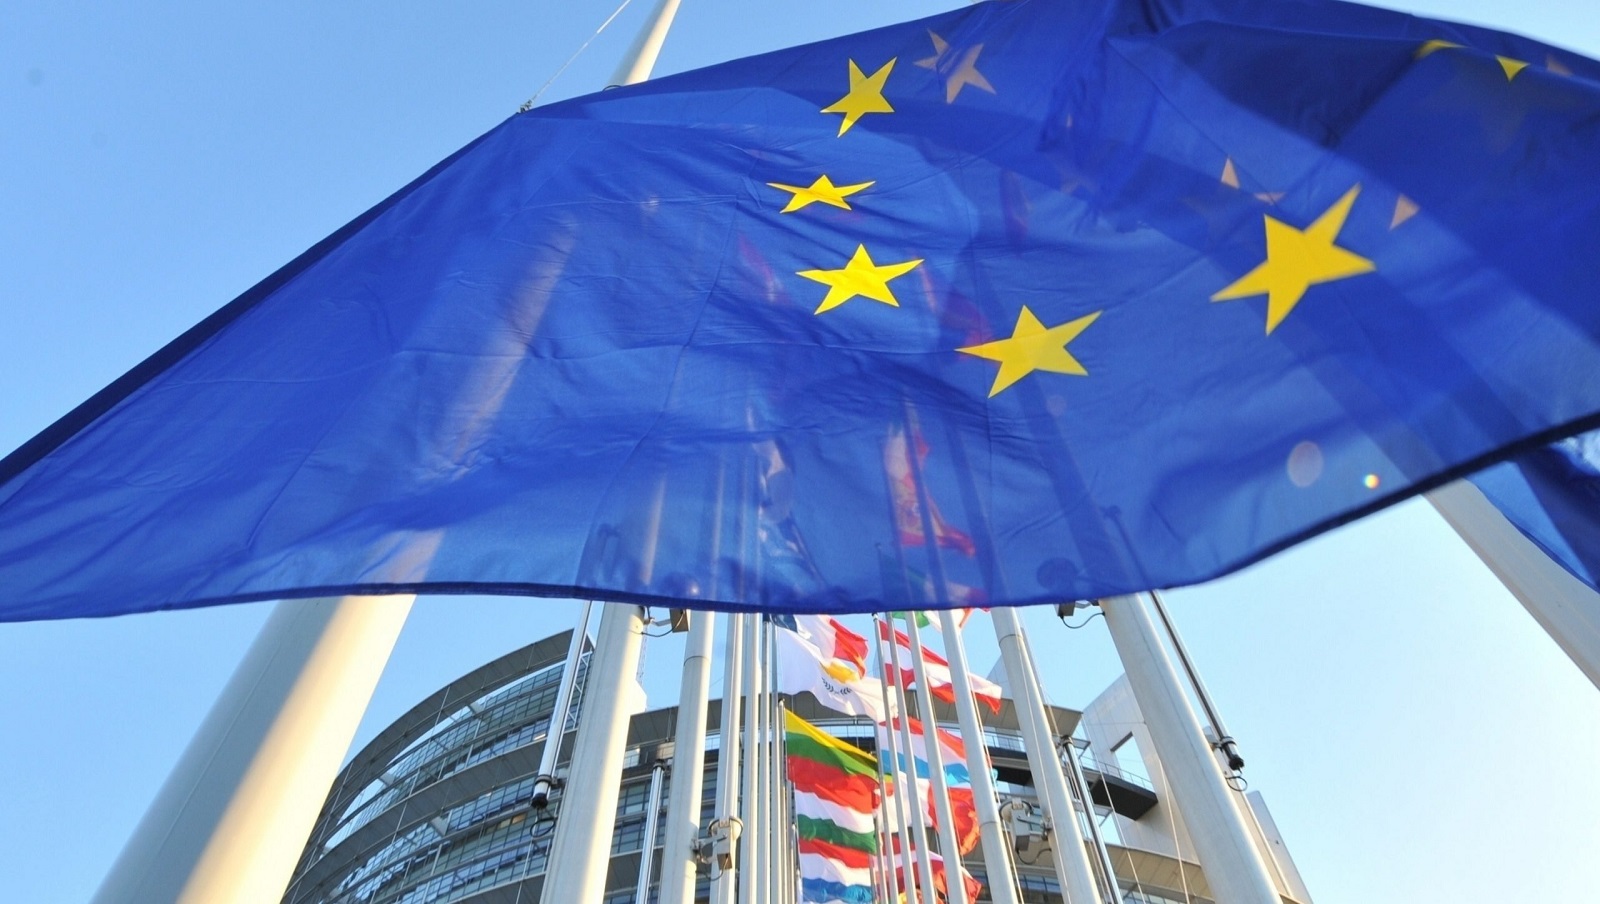 Republica Moldova, avans neașteptat de rapid în drum spre UE